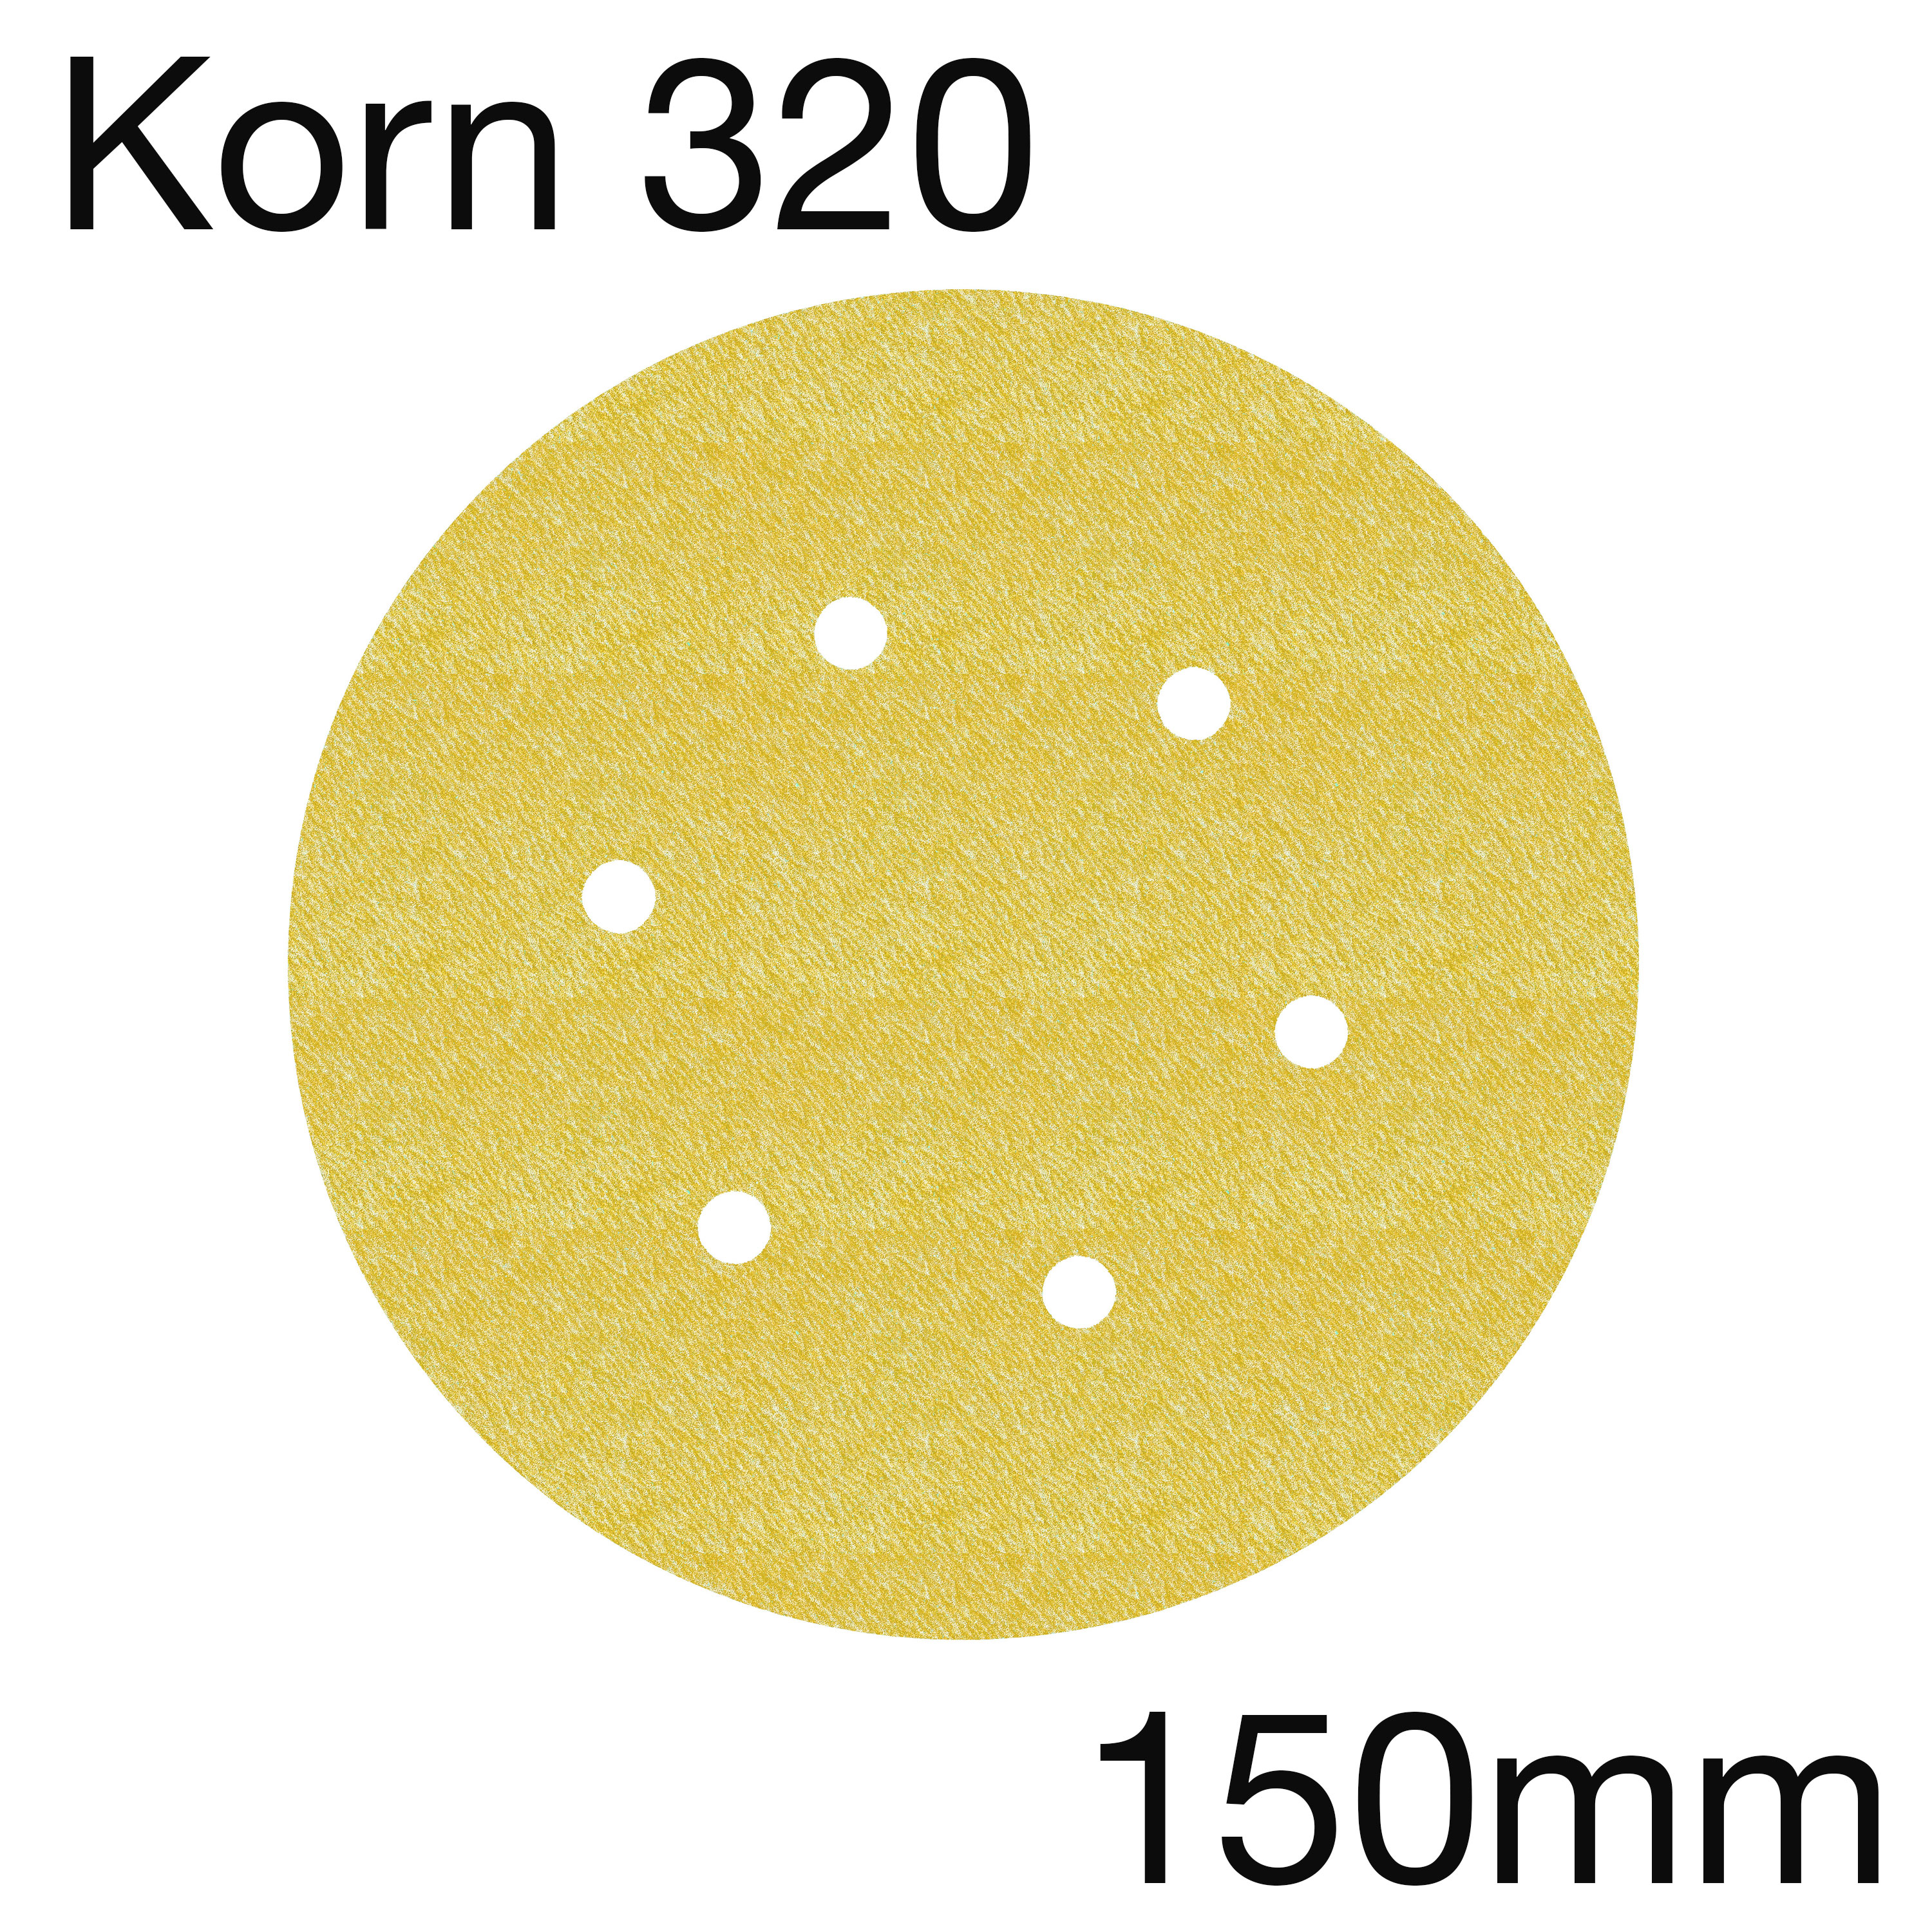 3M 255 63337 Hookit Papierschleifscheiben Gold, 6-Loch, Korn 320, 150mm, Pack mit 100 Stk